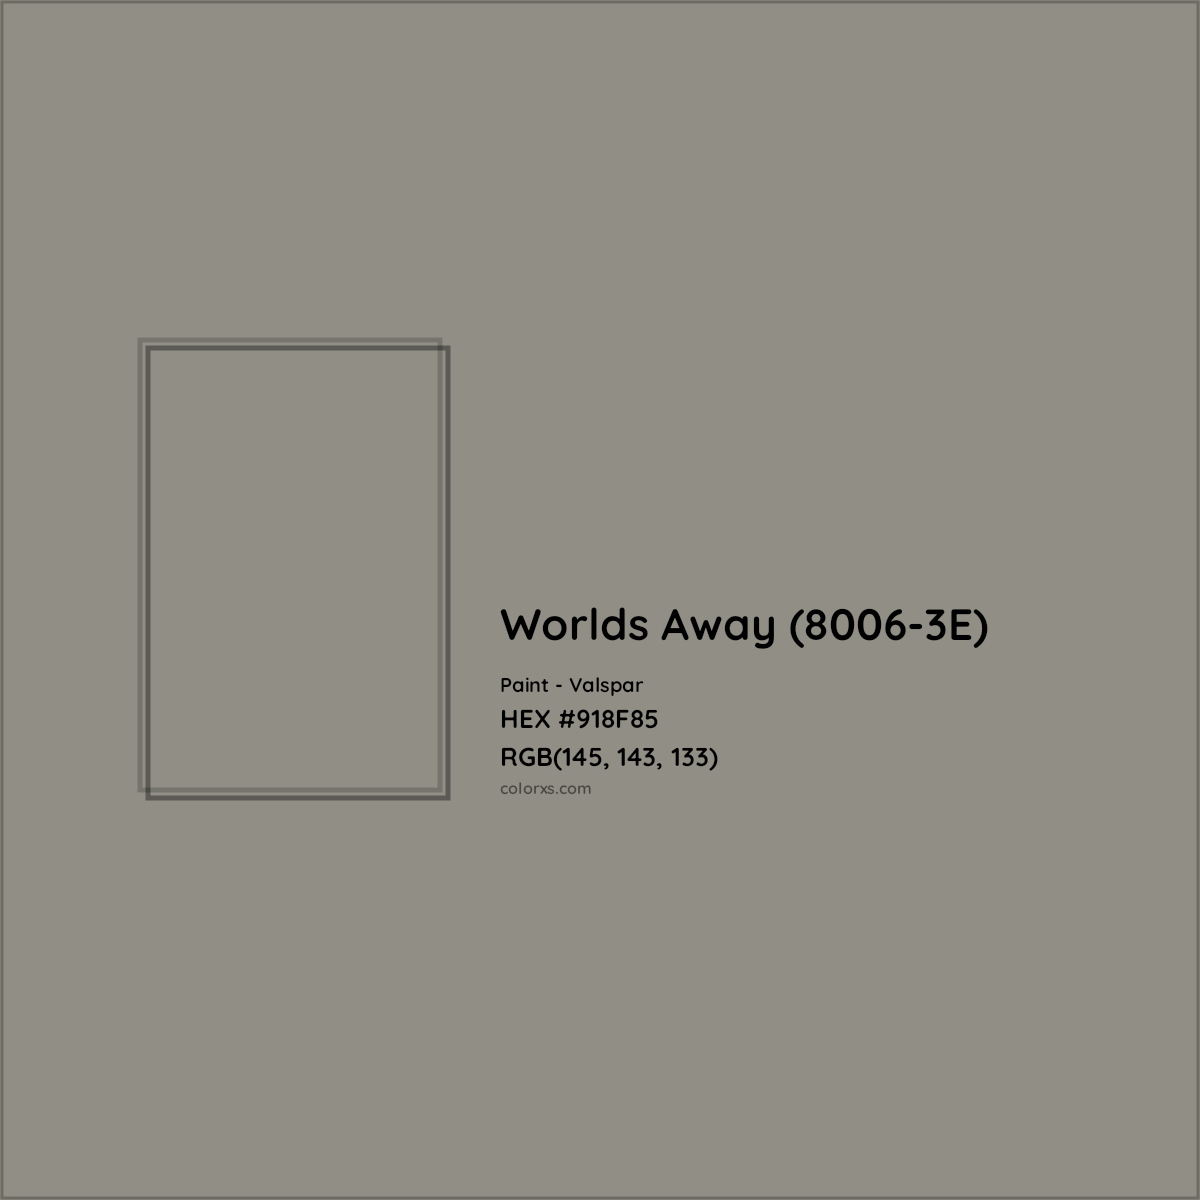 HEX #918F85 Worlds Away (8006-3E) Paint Valspar - Color Code